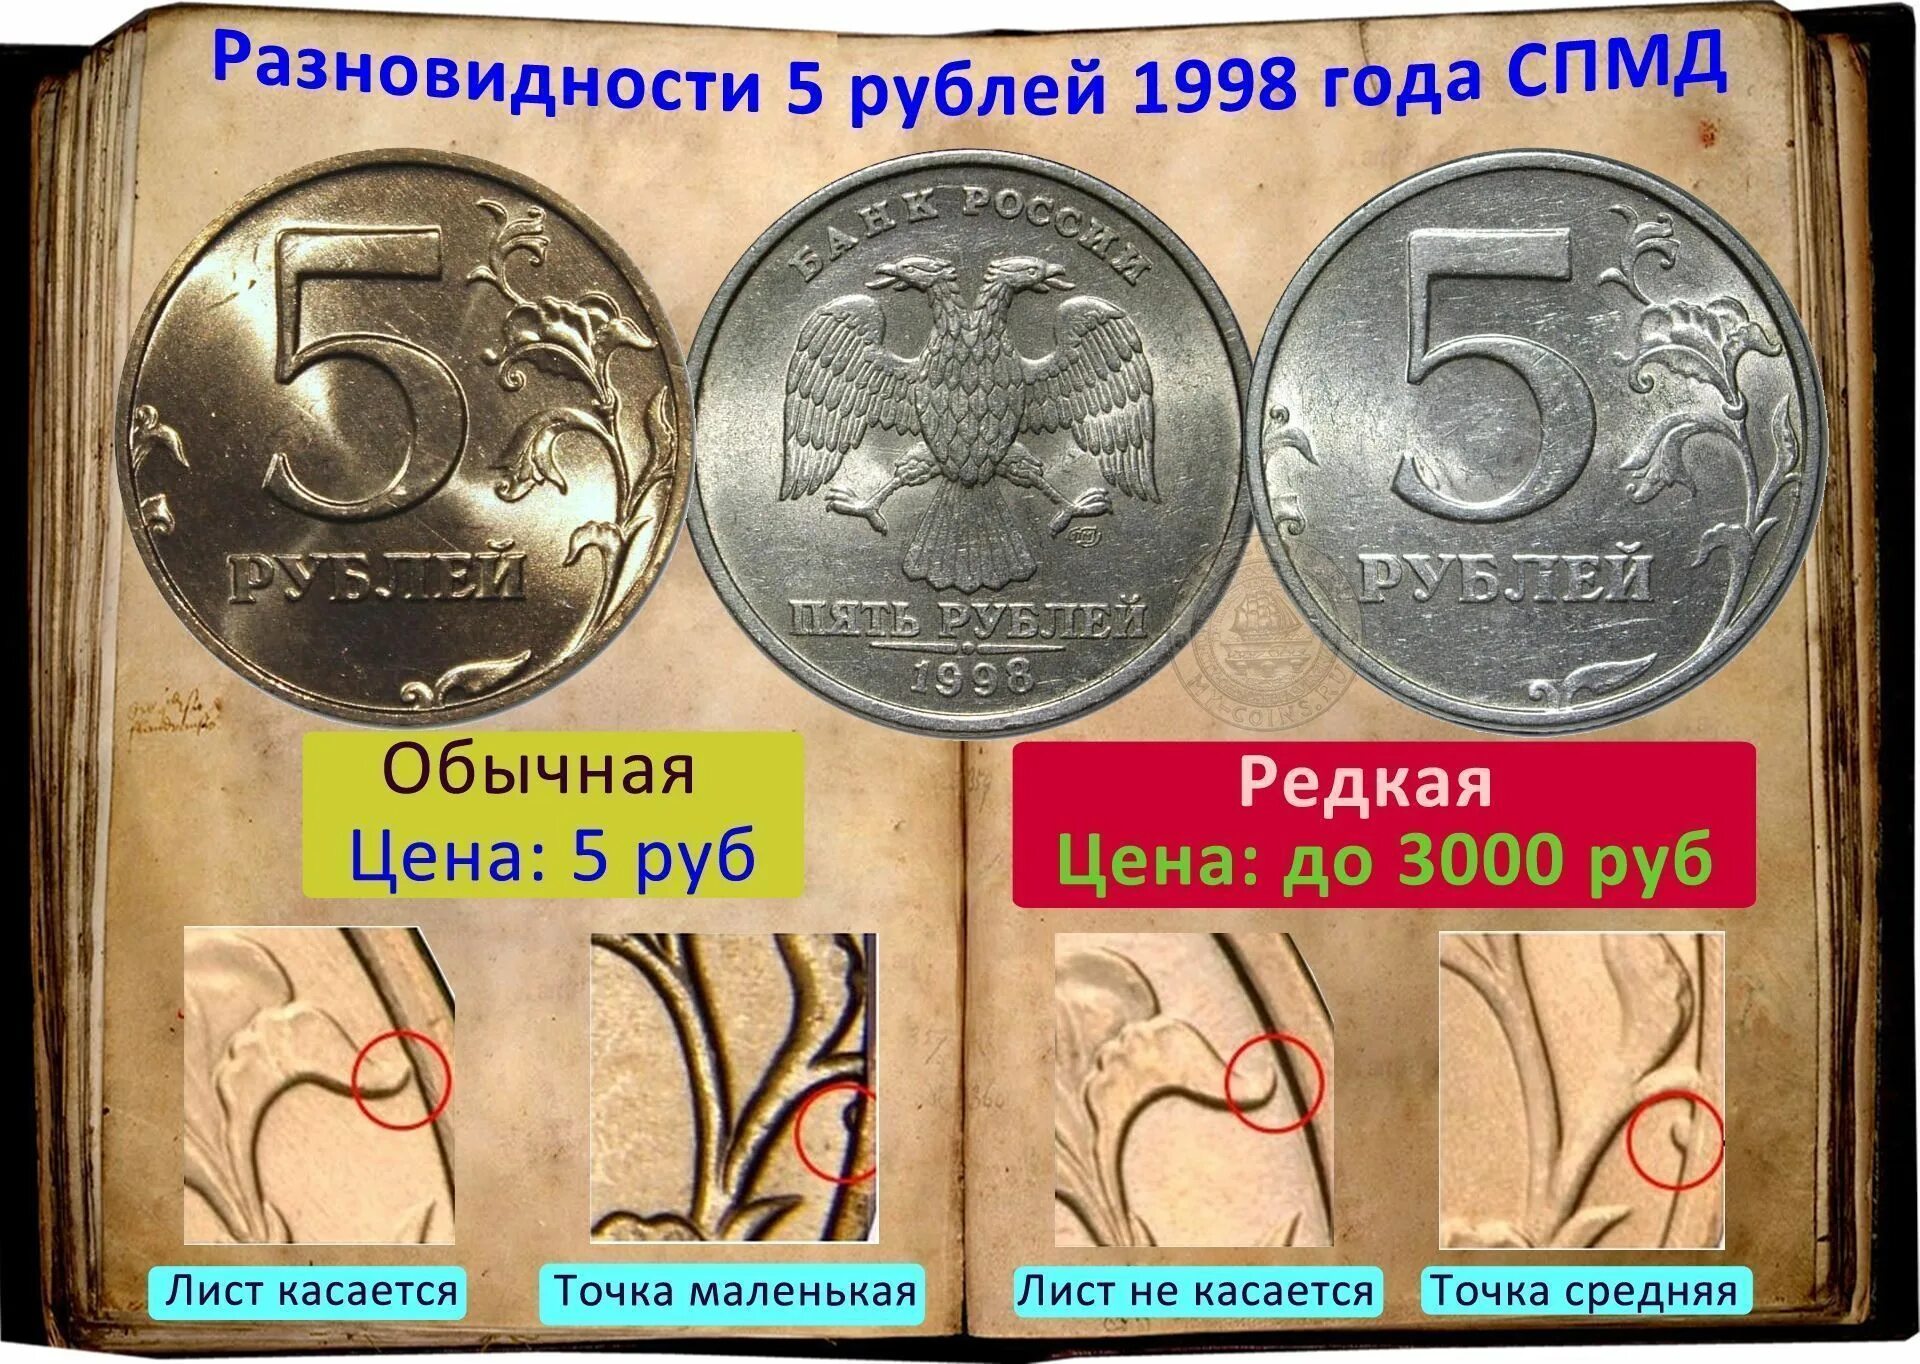 Редкая монета 5 рублей 1998 года СПМД. Монеты СПМД 1998 год 5 рублей. Монета 5 рублей 1998 СПМД. Редкая монета 5 рублей 1998. 5 рублей редкие года